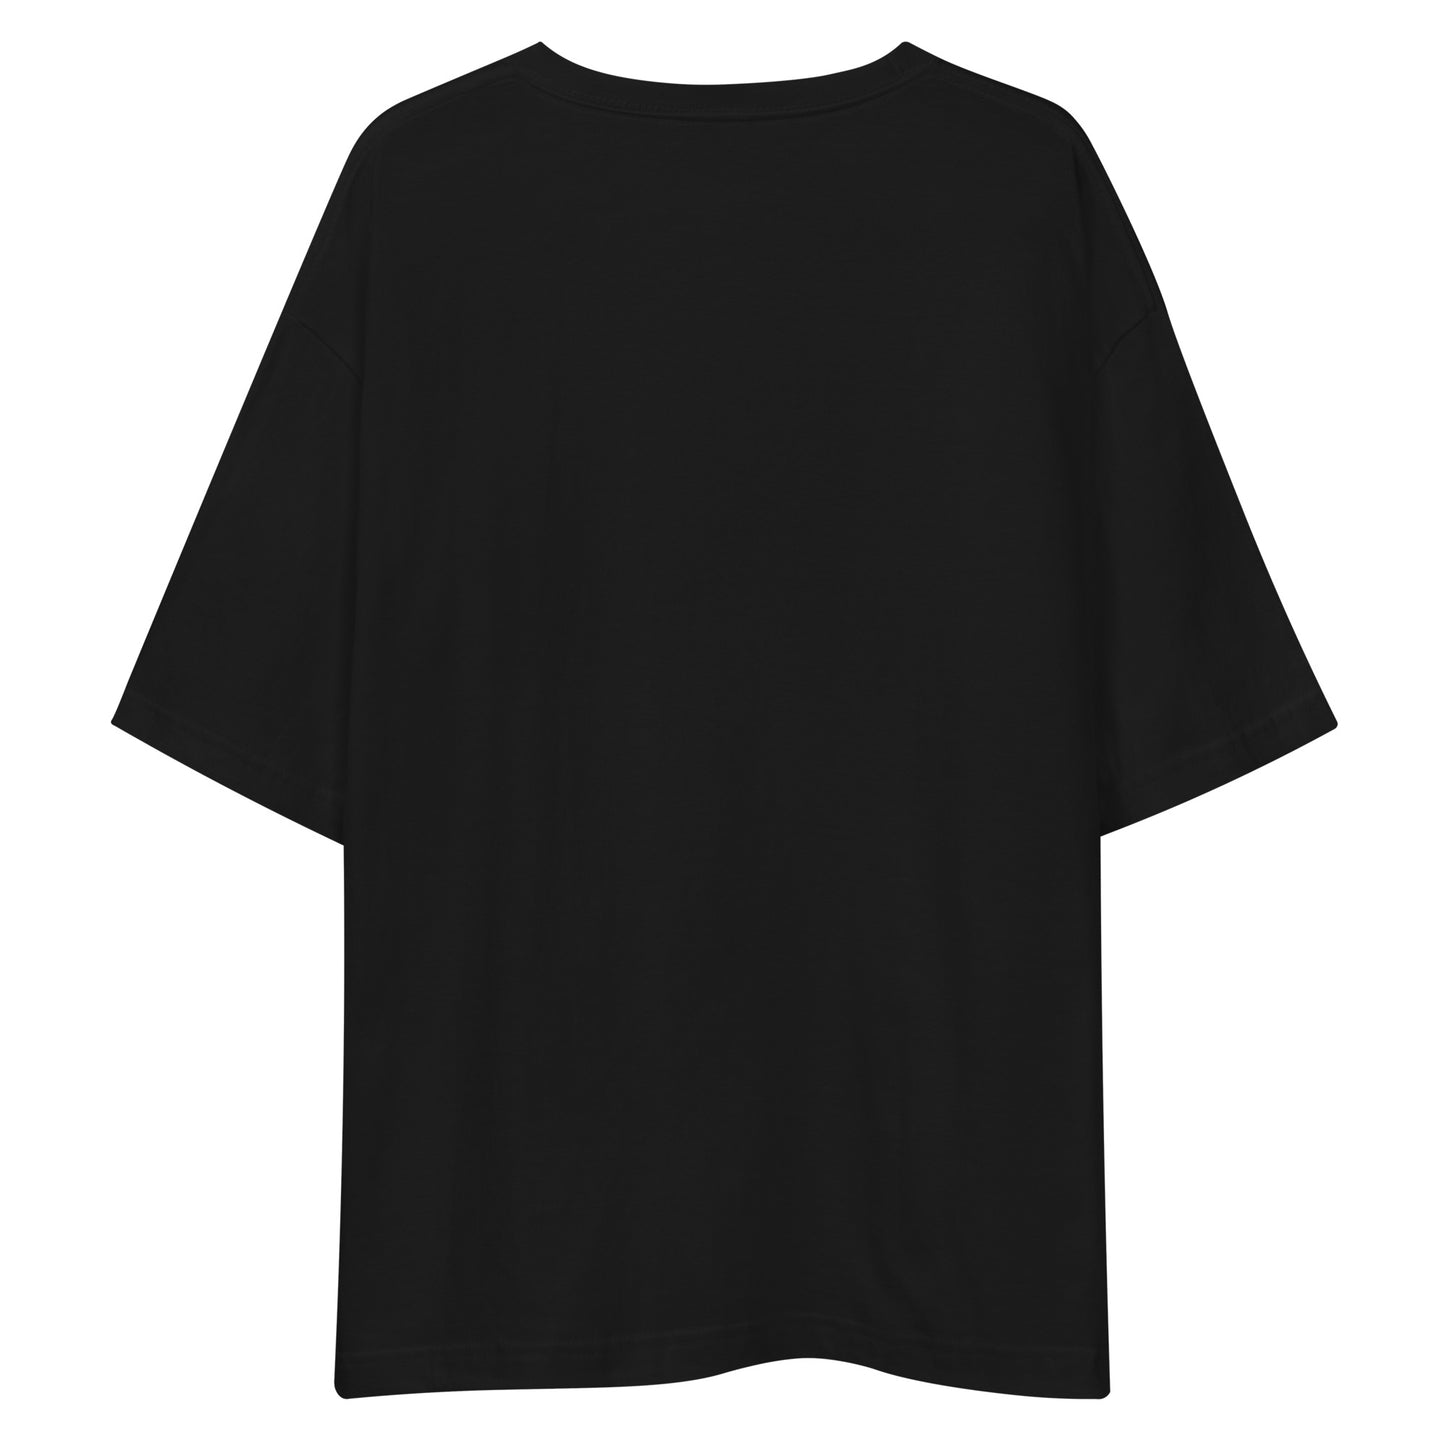 E235 - T-shirt/Siluet besar (MX menang : Hitam/Perak)